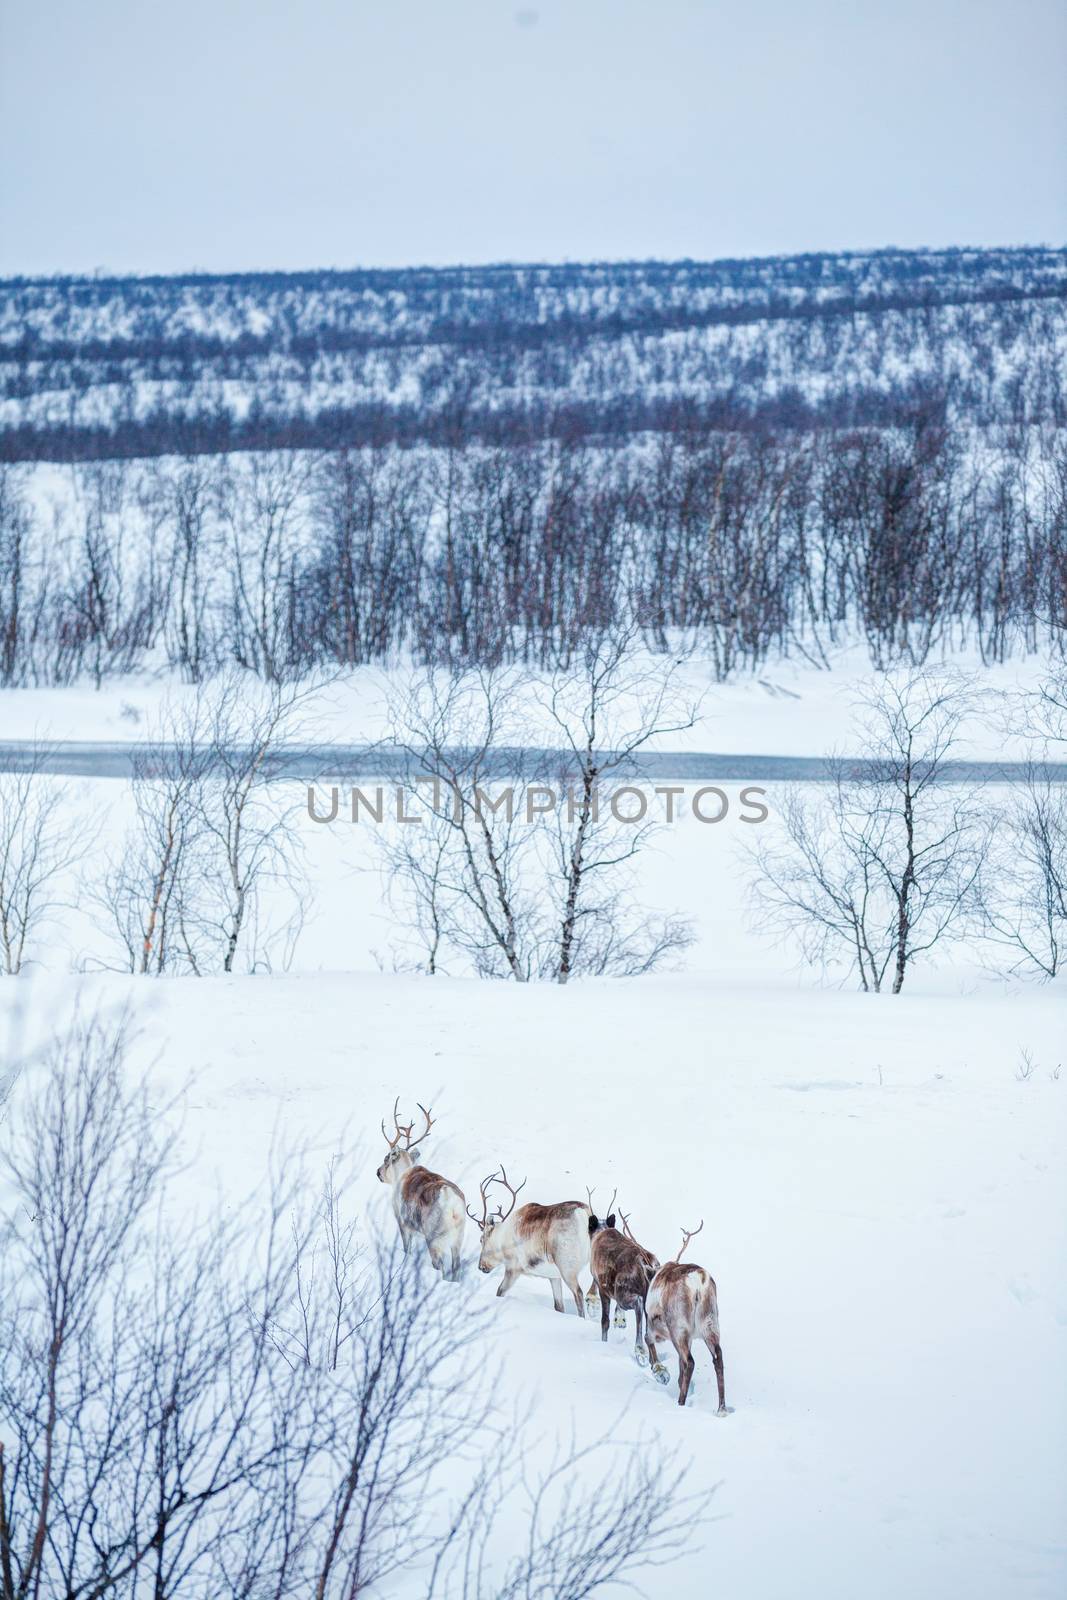 Reindeer. Norway, Scandinavia by maxoliki